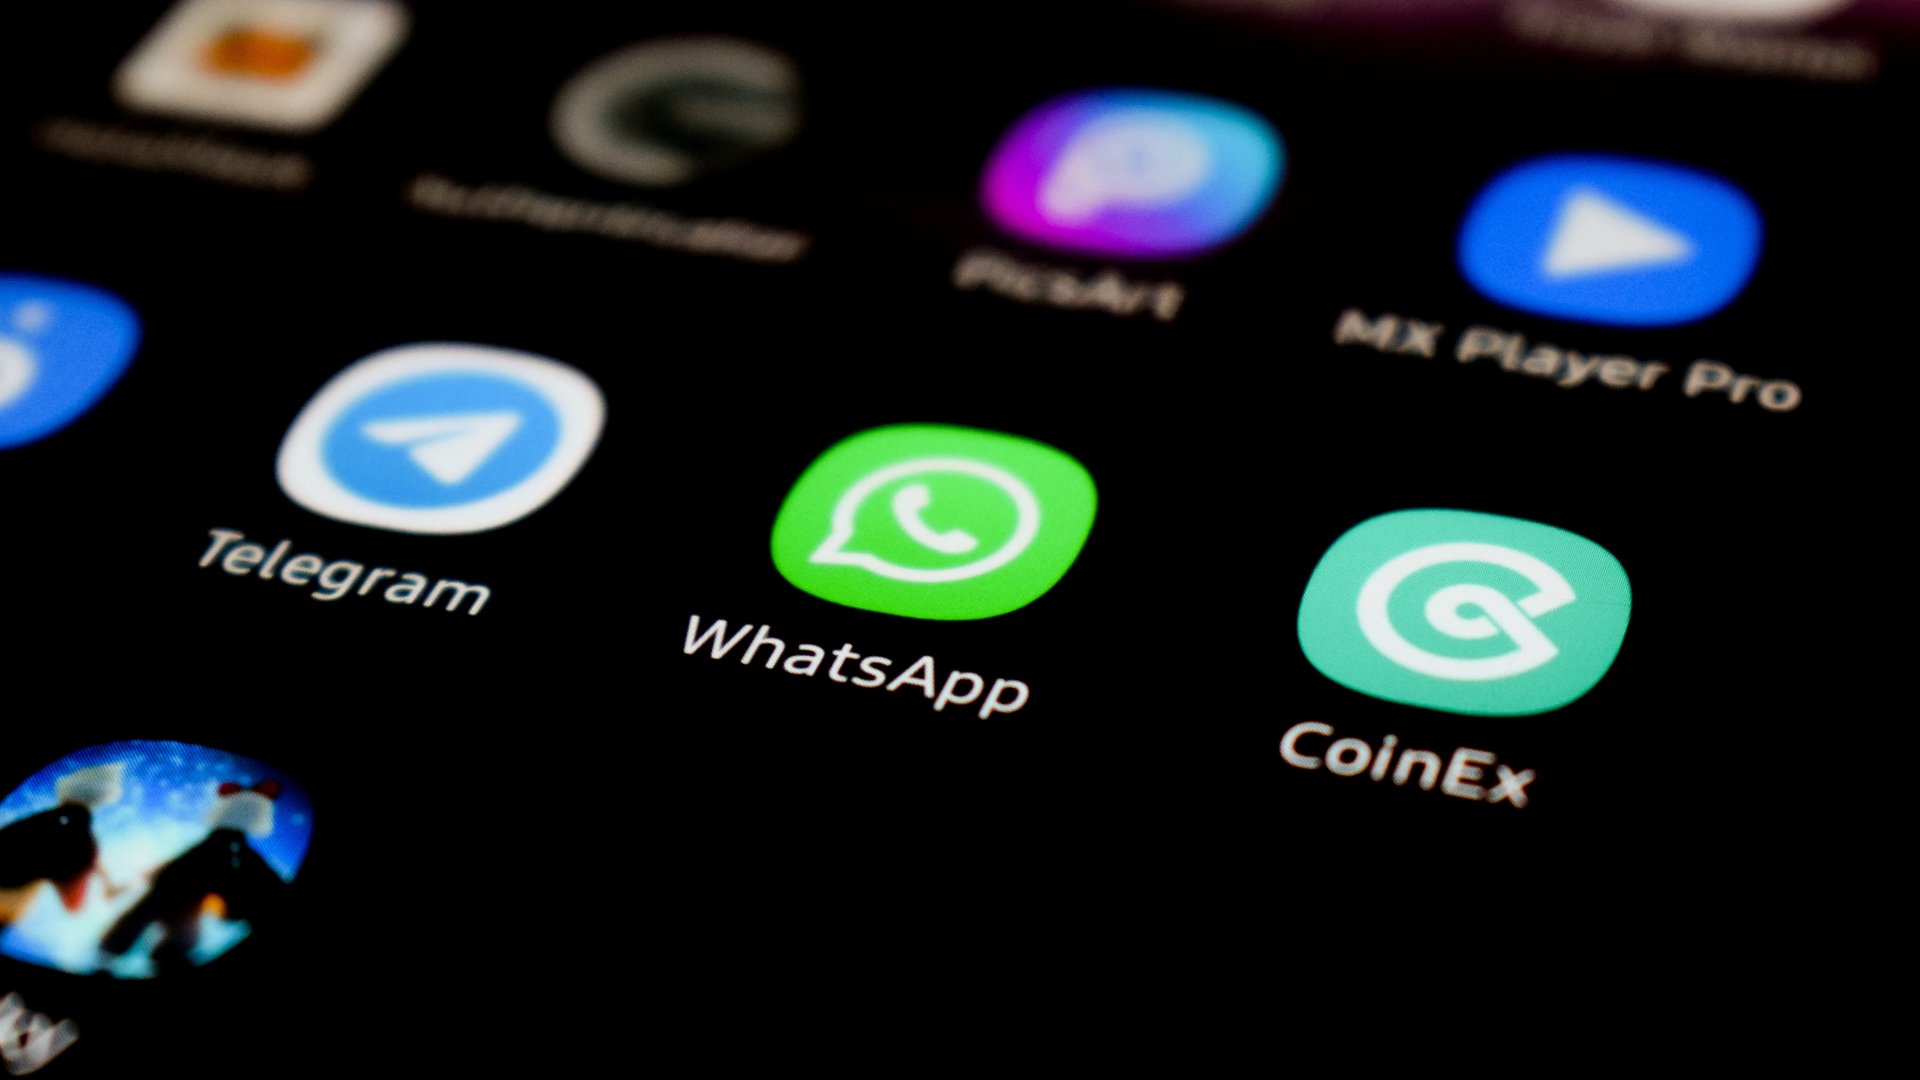 WhatsApp alkalmazás ikonja egy okostelefonon